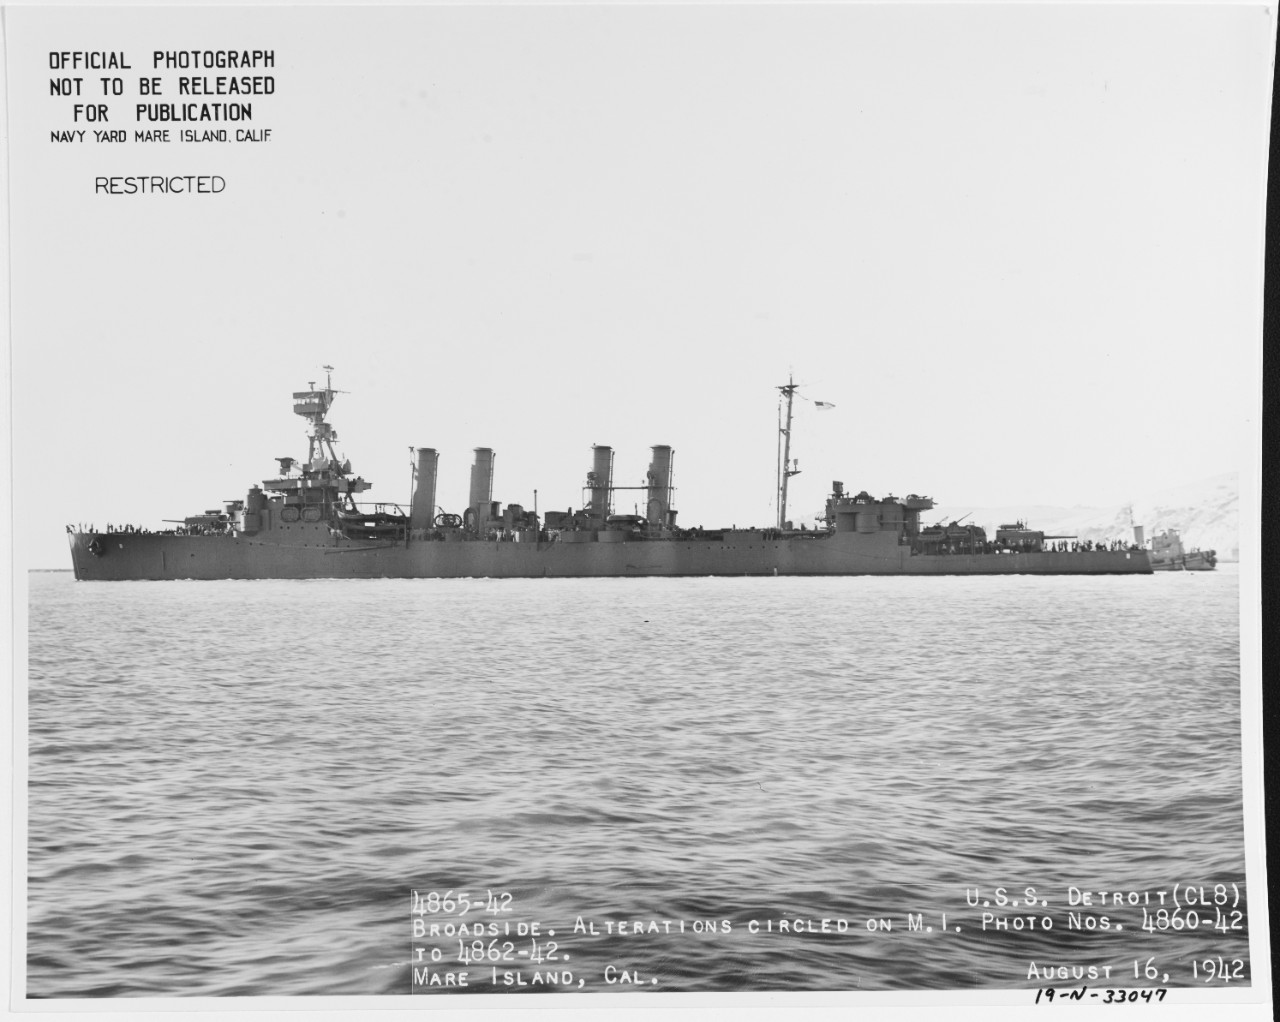 Photo #: 19-N-33047  USS Detroit (CL-8)